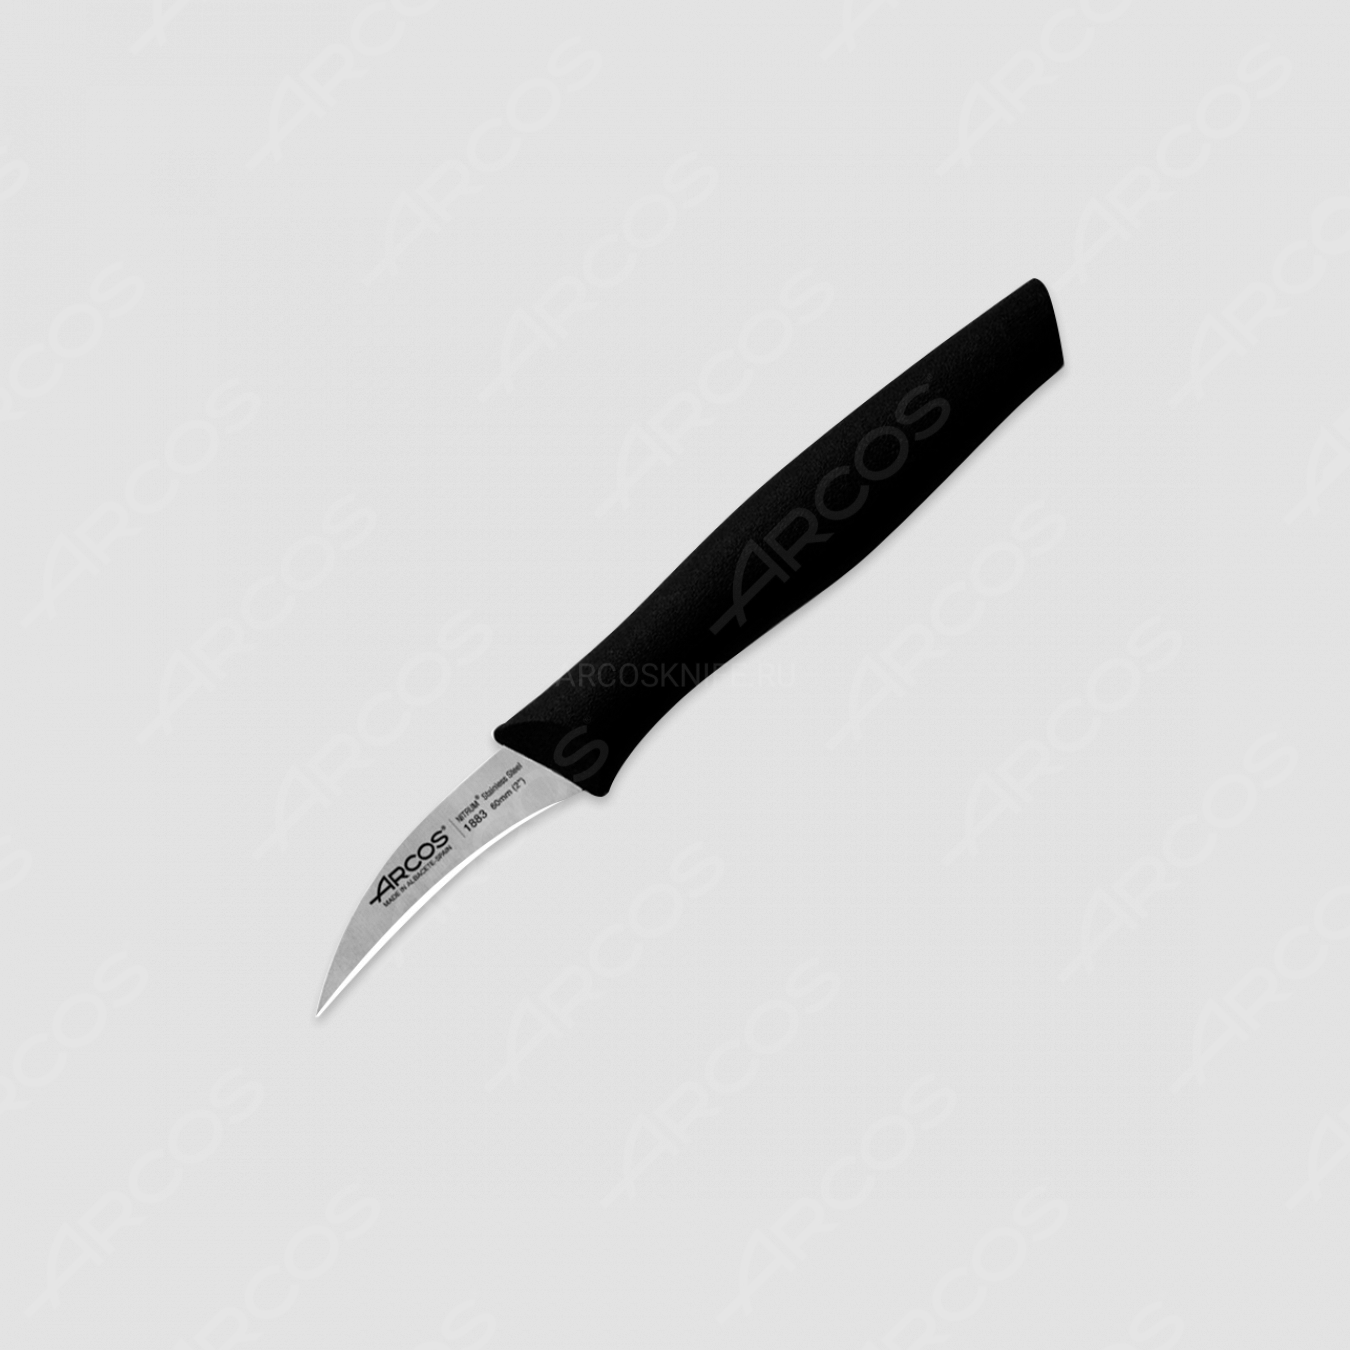 Нож кухонный для чистки 6 см, рукоять черная, серия Nova, ARCOS, Испания